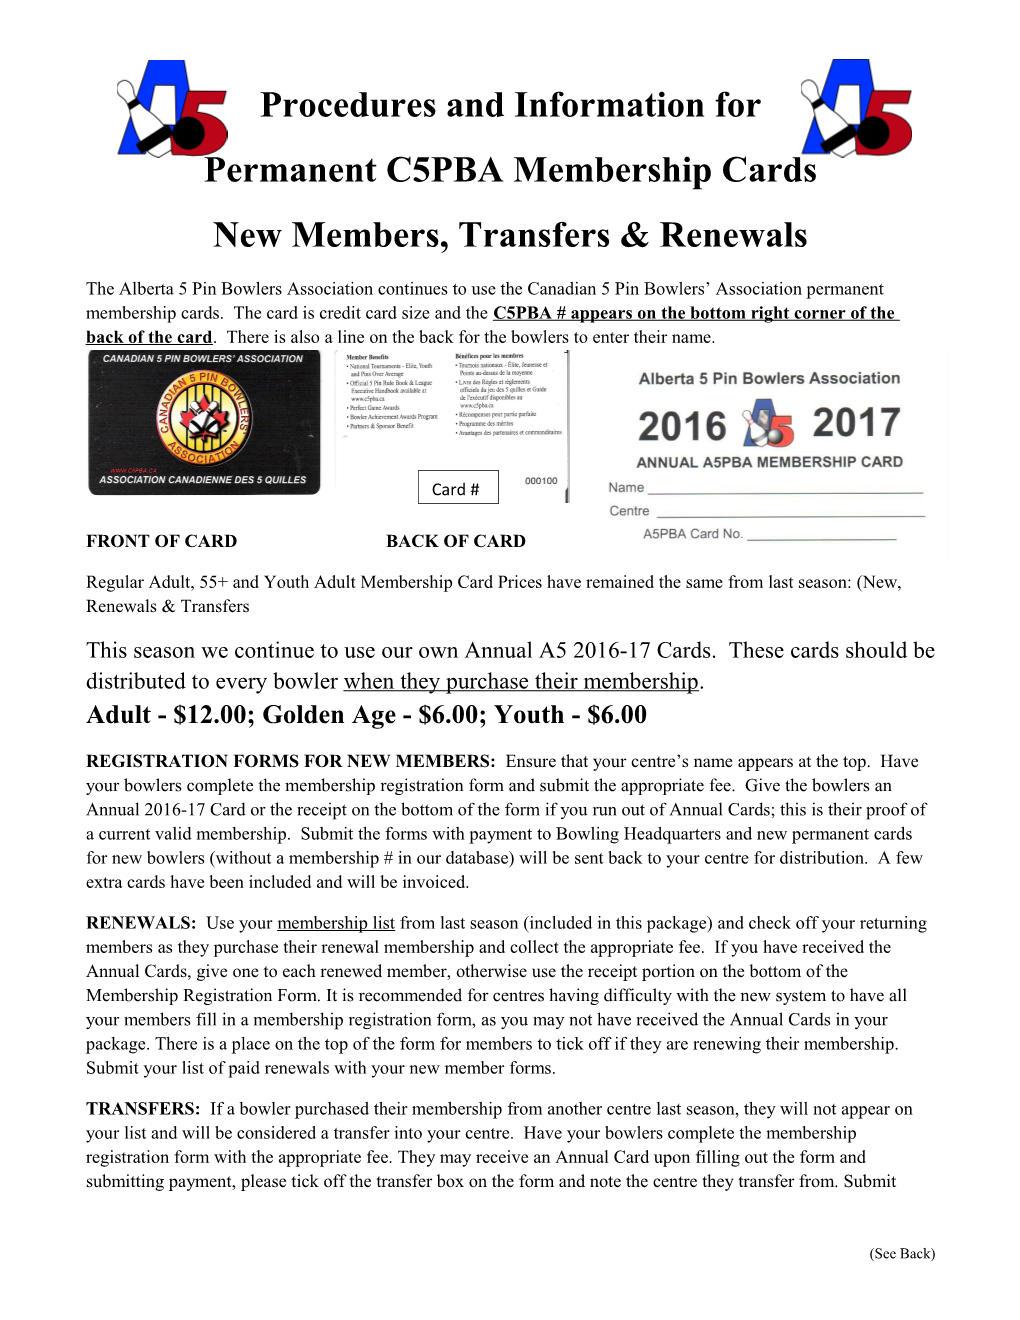 New Permanent C5PBA Membership Cards